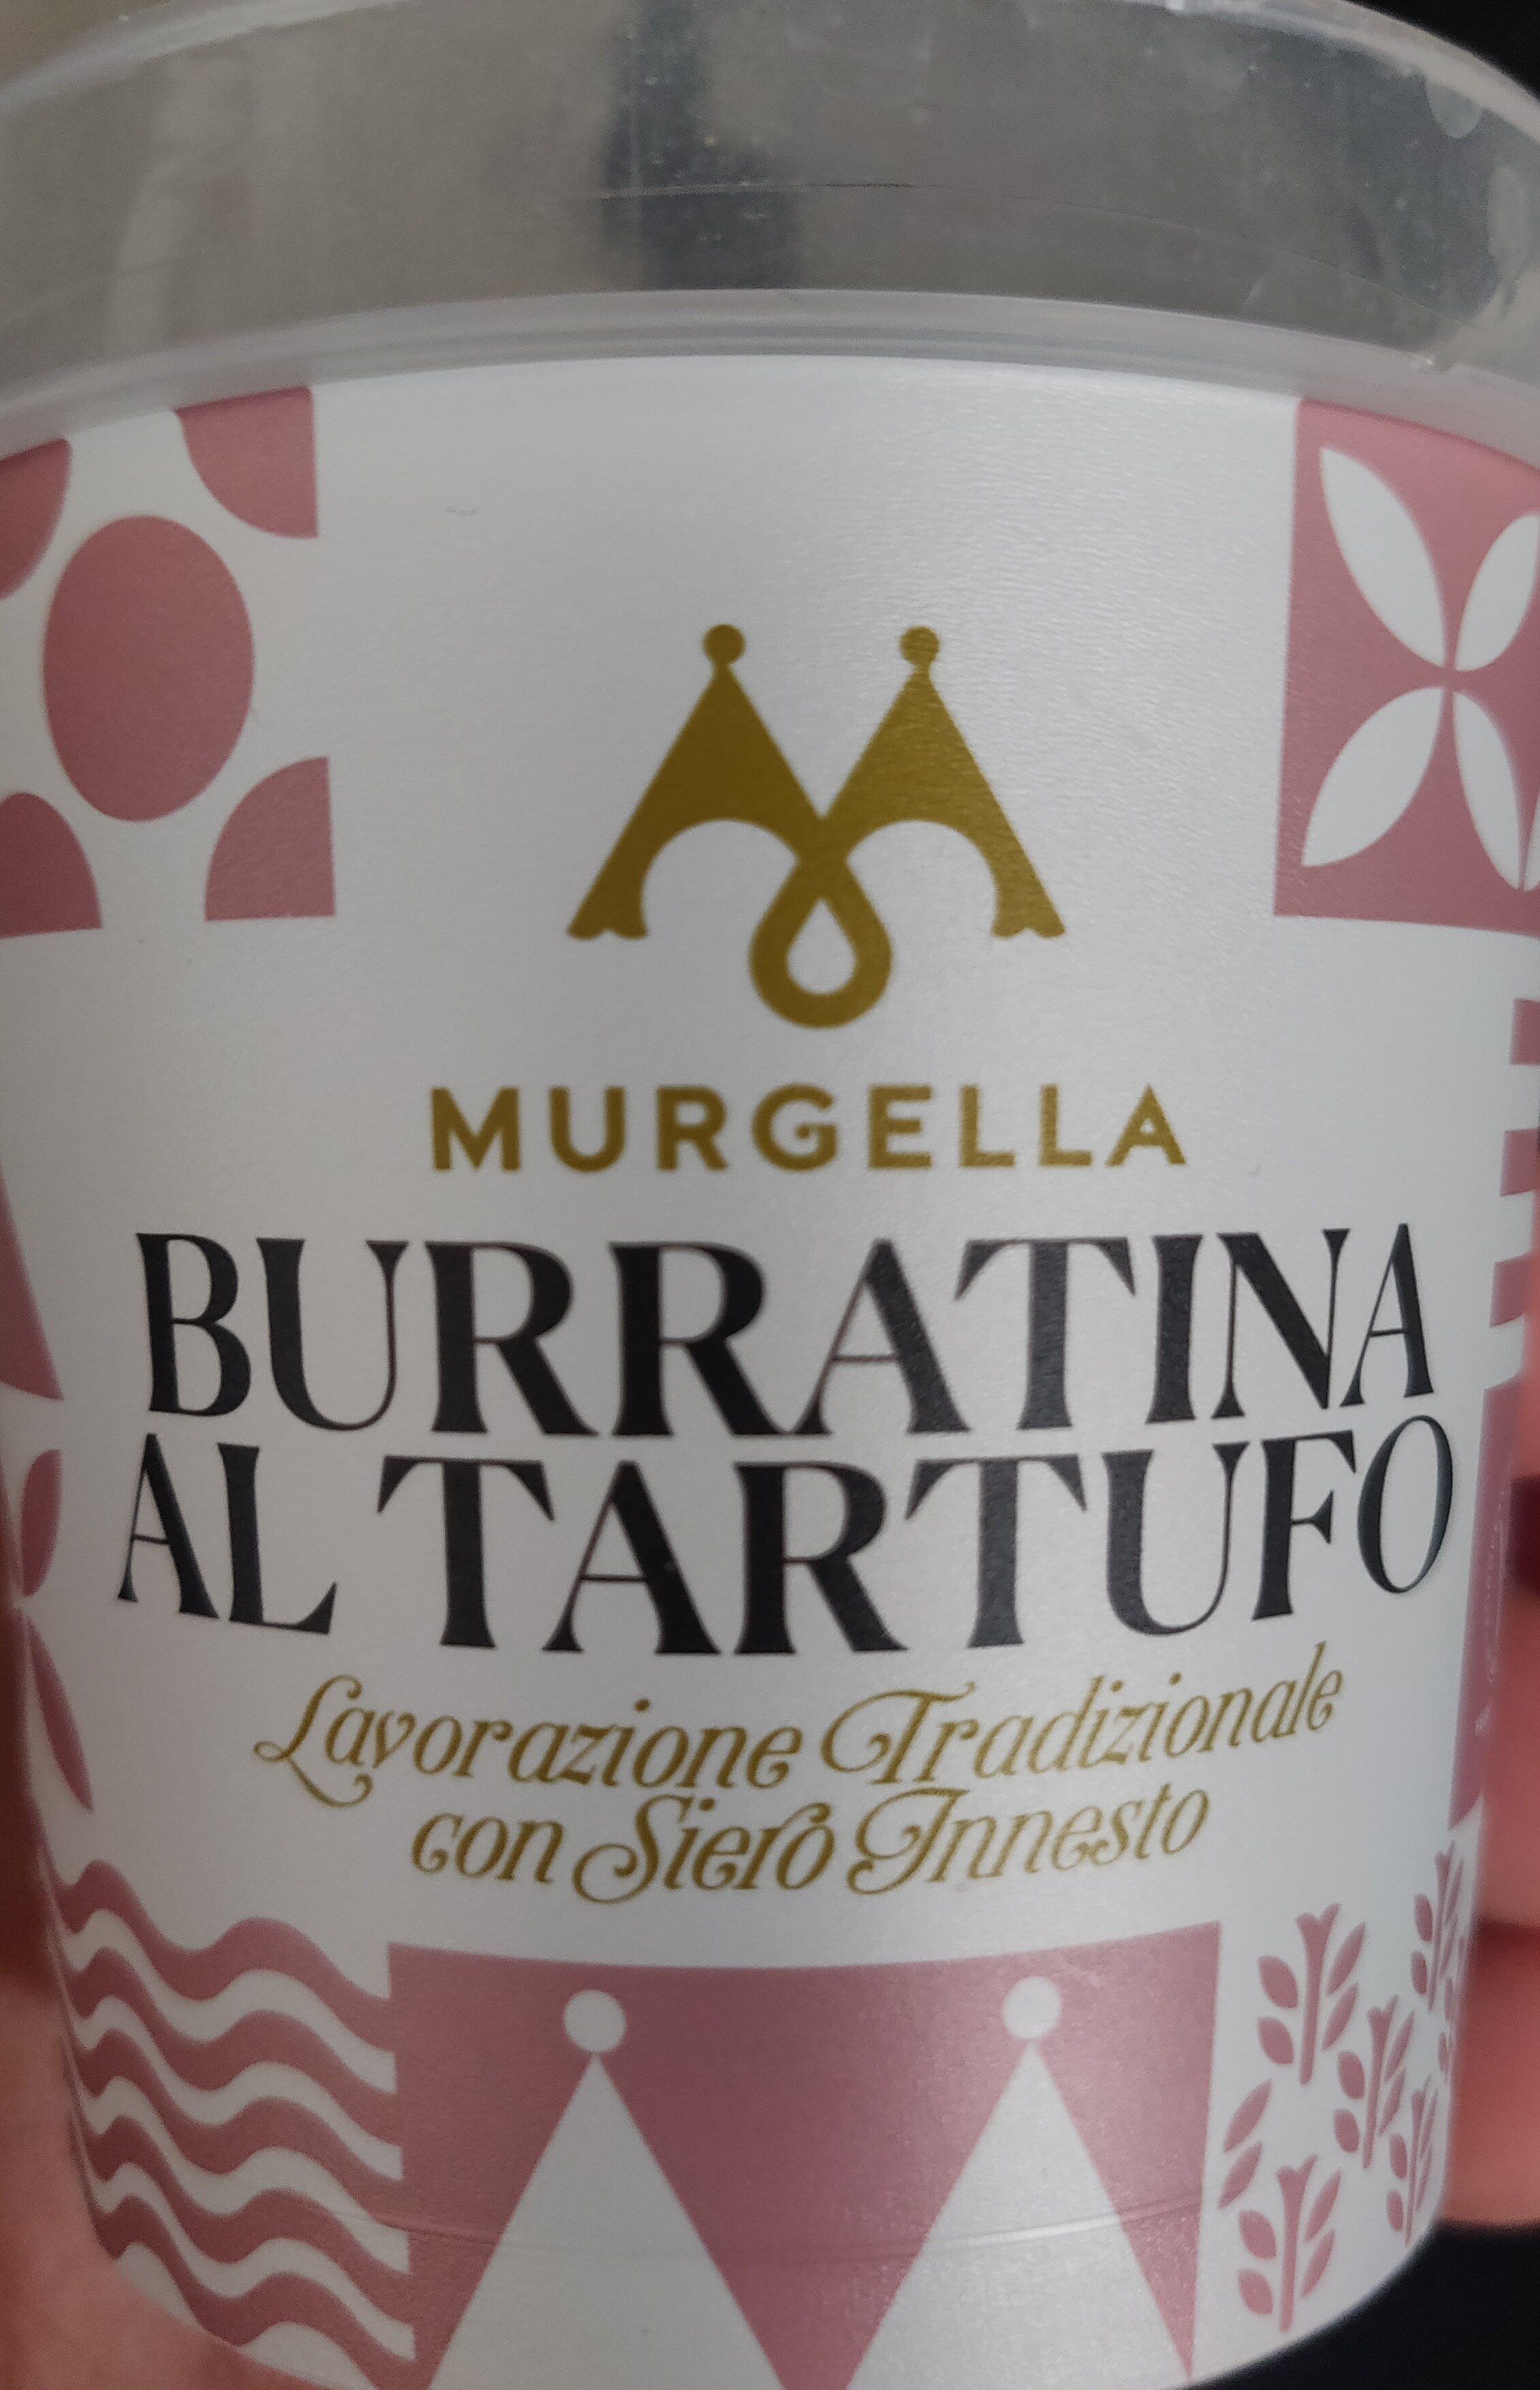 Burratina al tarfufo - Product - it